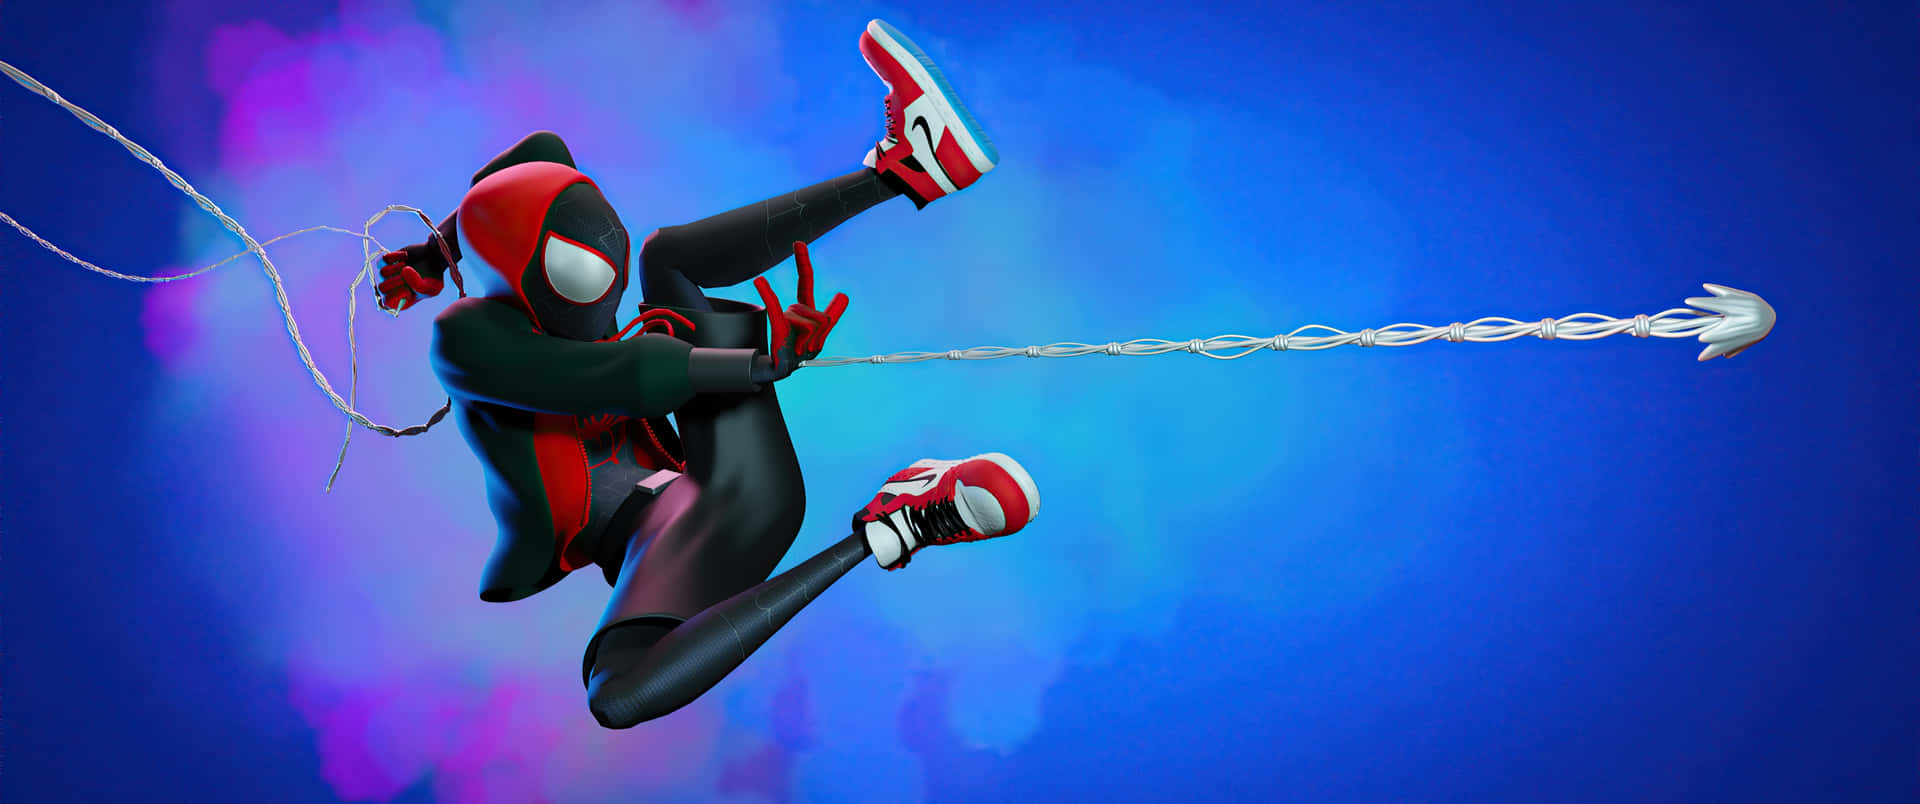 Spiderman Balanceándose A Través Del Paisaje Nocturno De La Ciudad. Fondo de pantalla